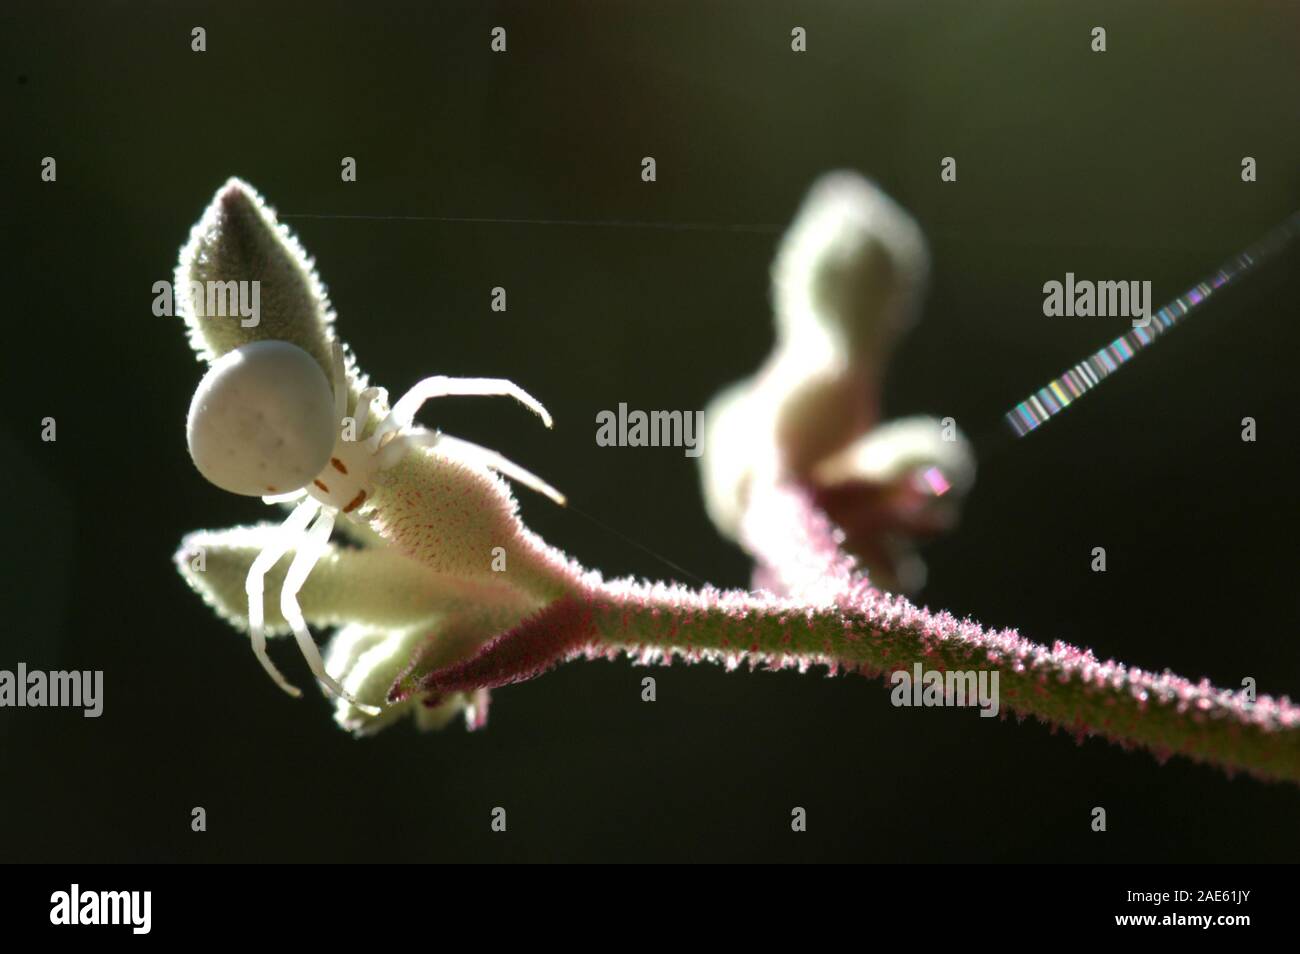 White Crab Spider ist manchmal auch als Weiße Blume Spider bekannt. Hier auf Kangaroo paw Pflanze gesehen. Stockfoto